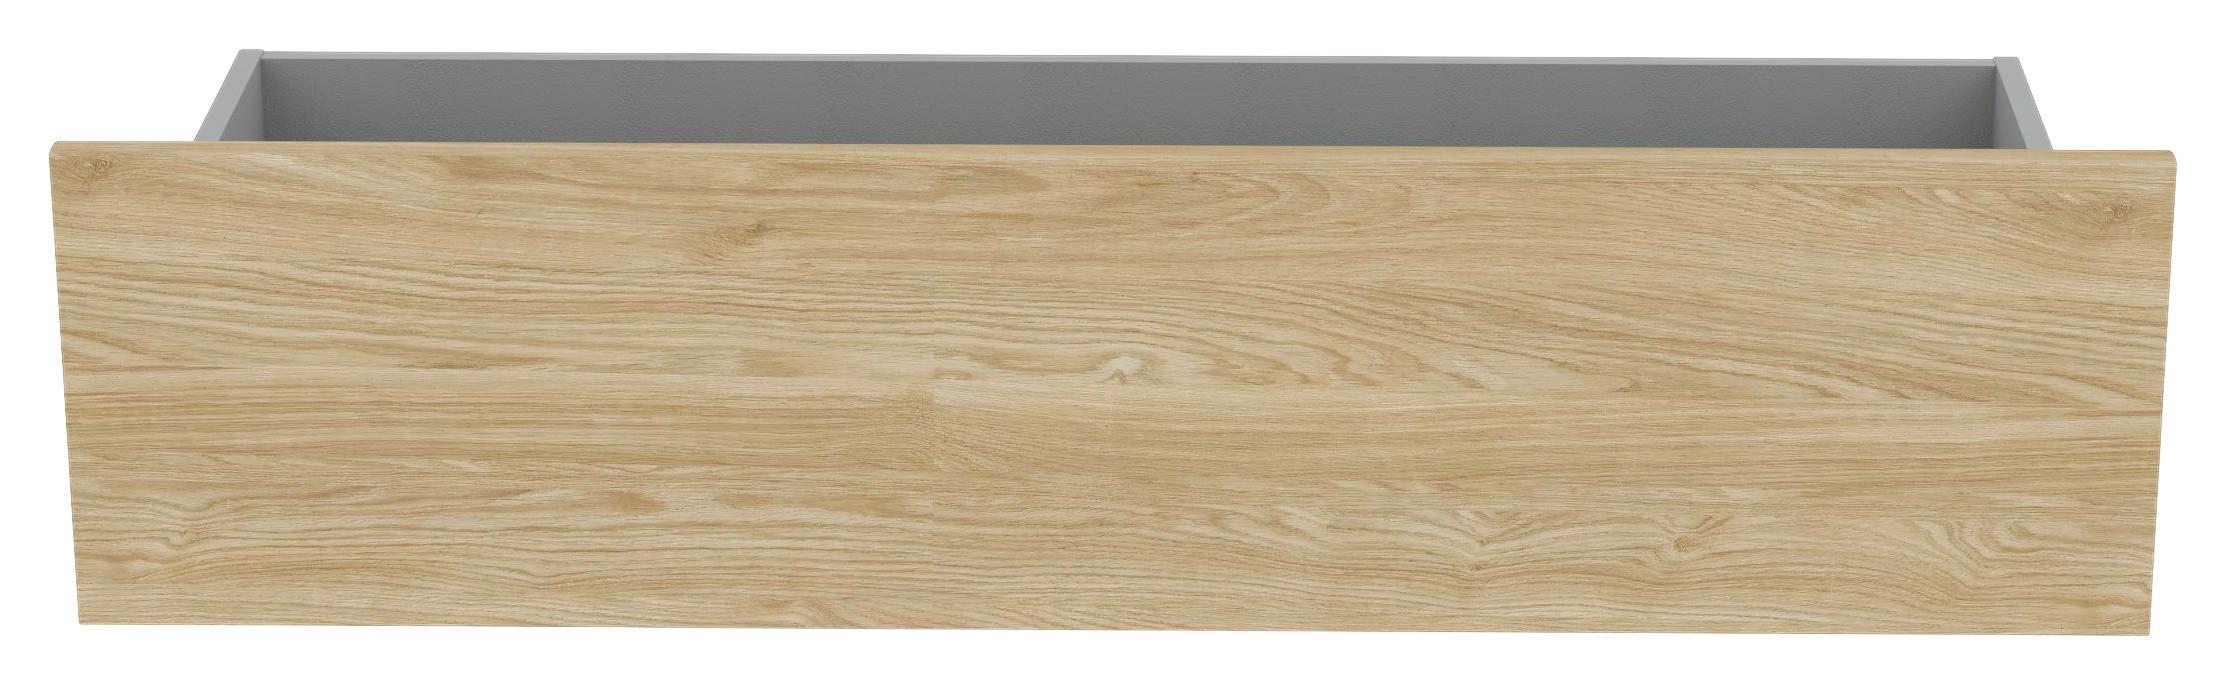 Zásuvka Unit-Elements - barvy dubu, Moderní, kompozitní dřevo (90,9/21,9/36,6cm) - Ondega